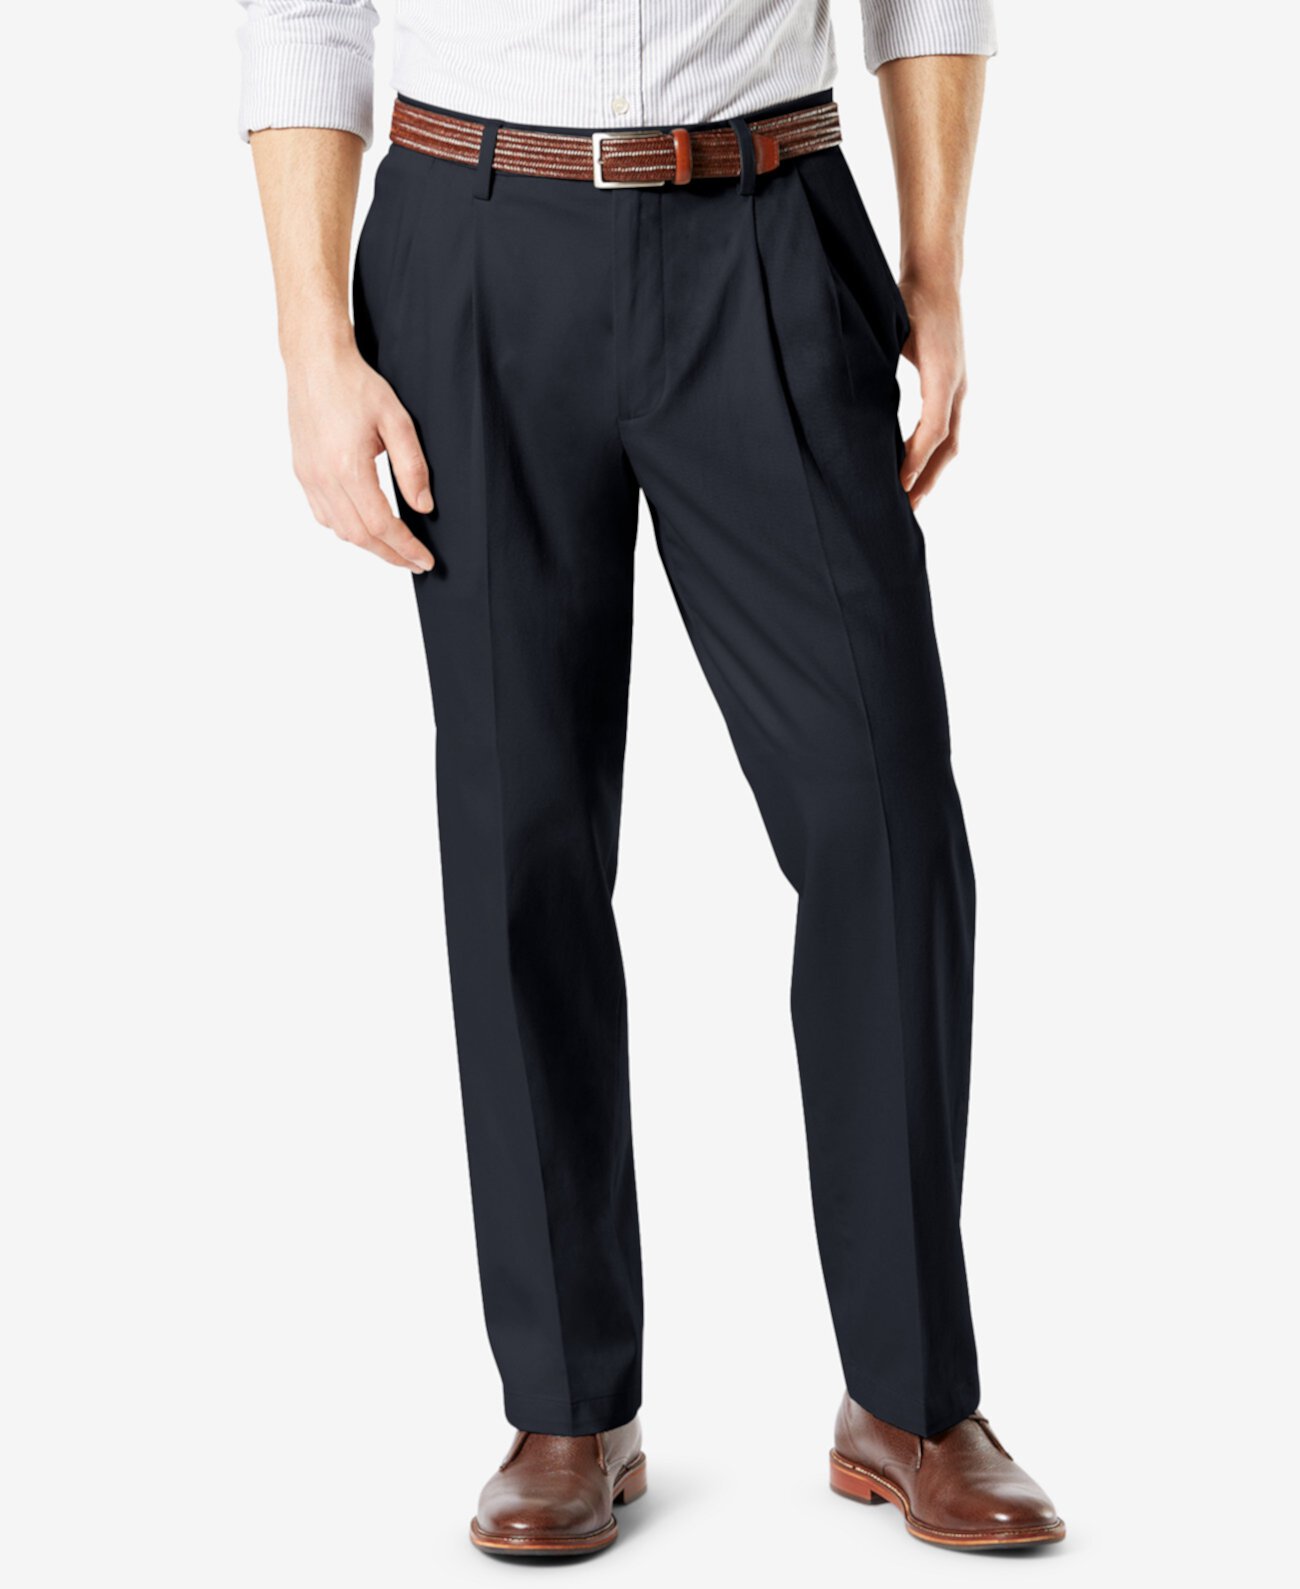 Мужские брюки цвета хаки Signature Lux Cotton свободного кроя со складками и складками Dockers